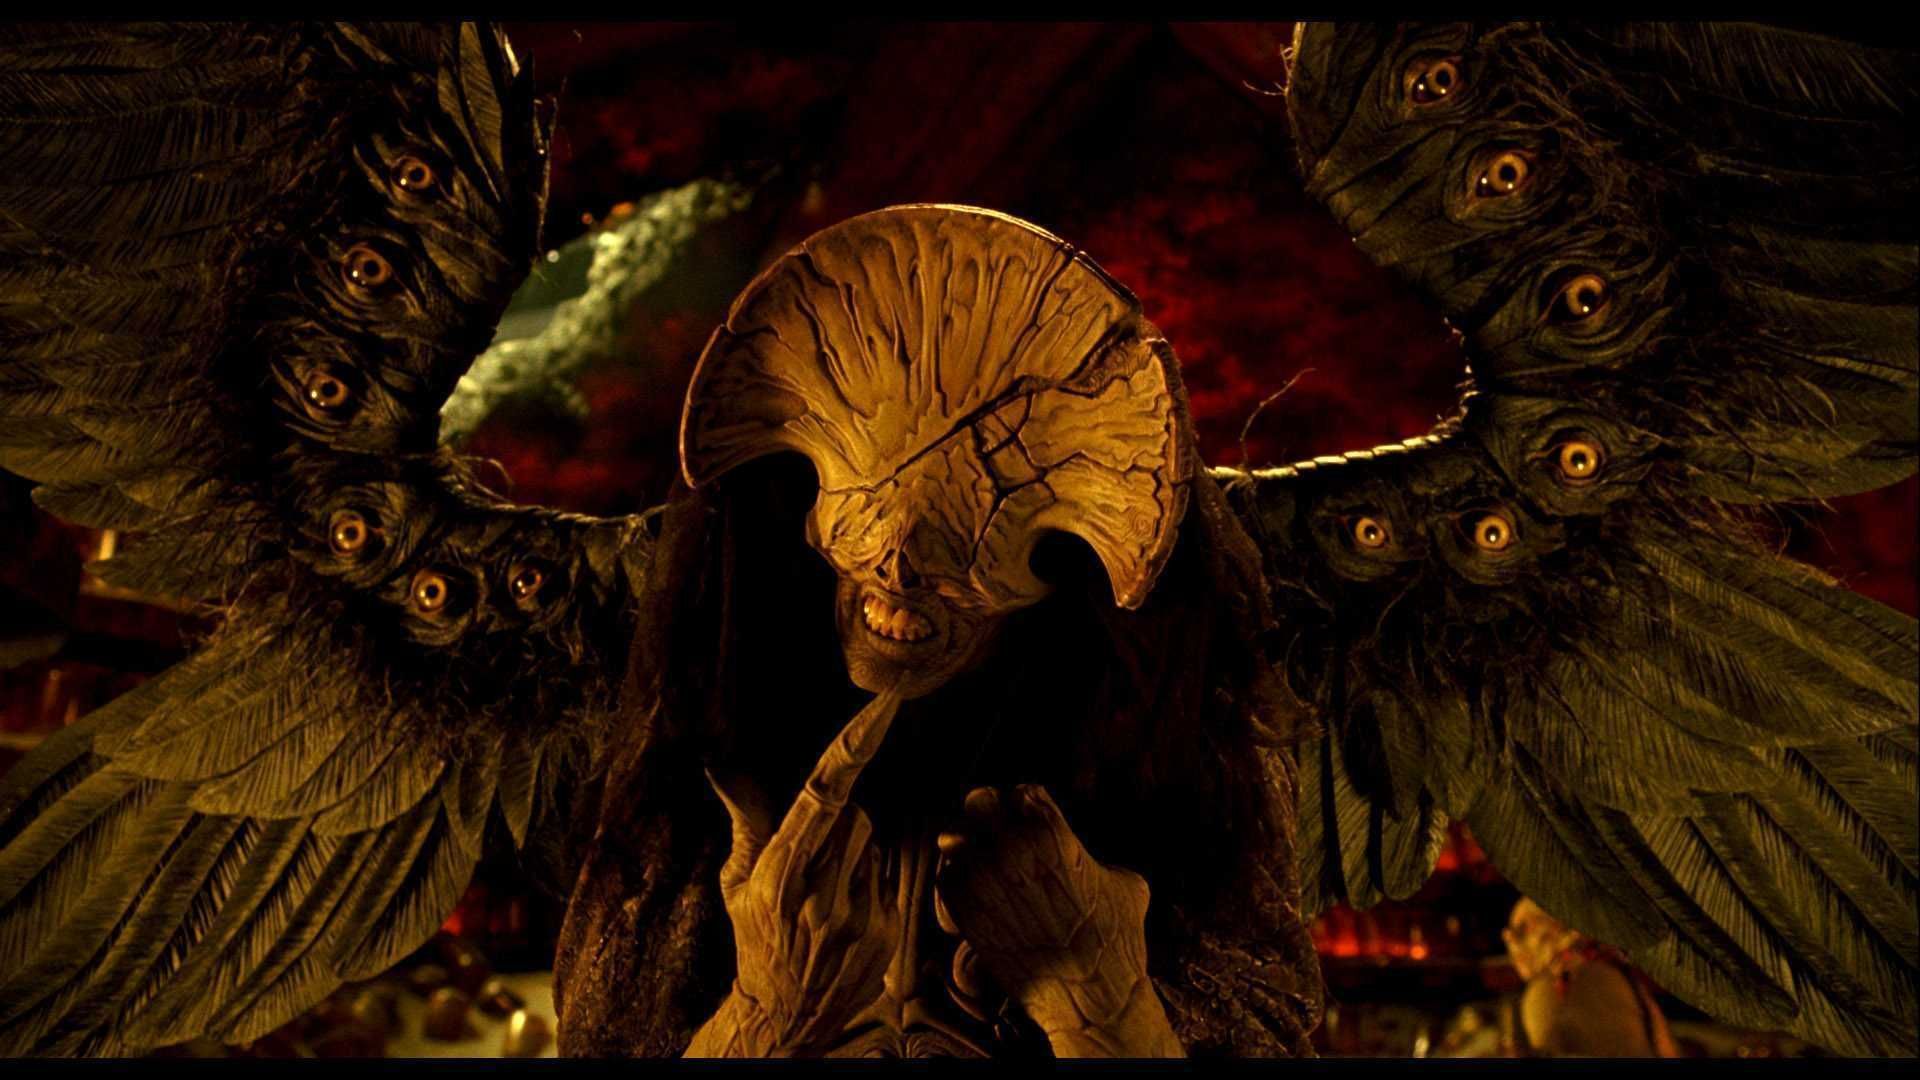 1372 - ¿Qué monstruo de Guillermo del Toro serías?